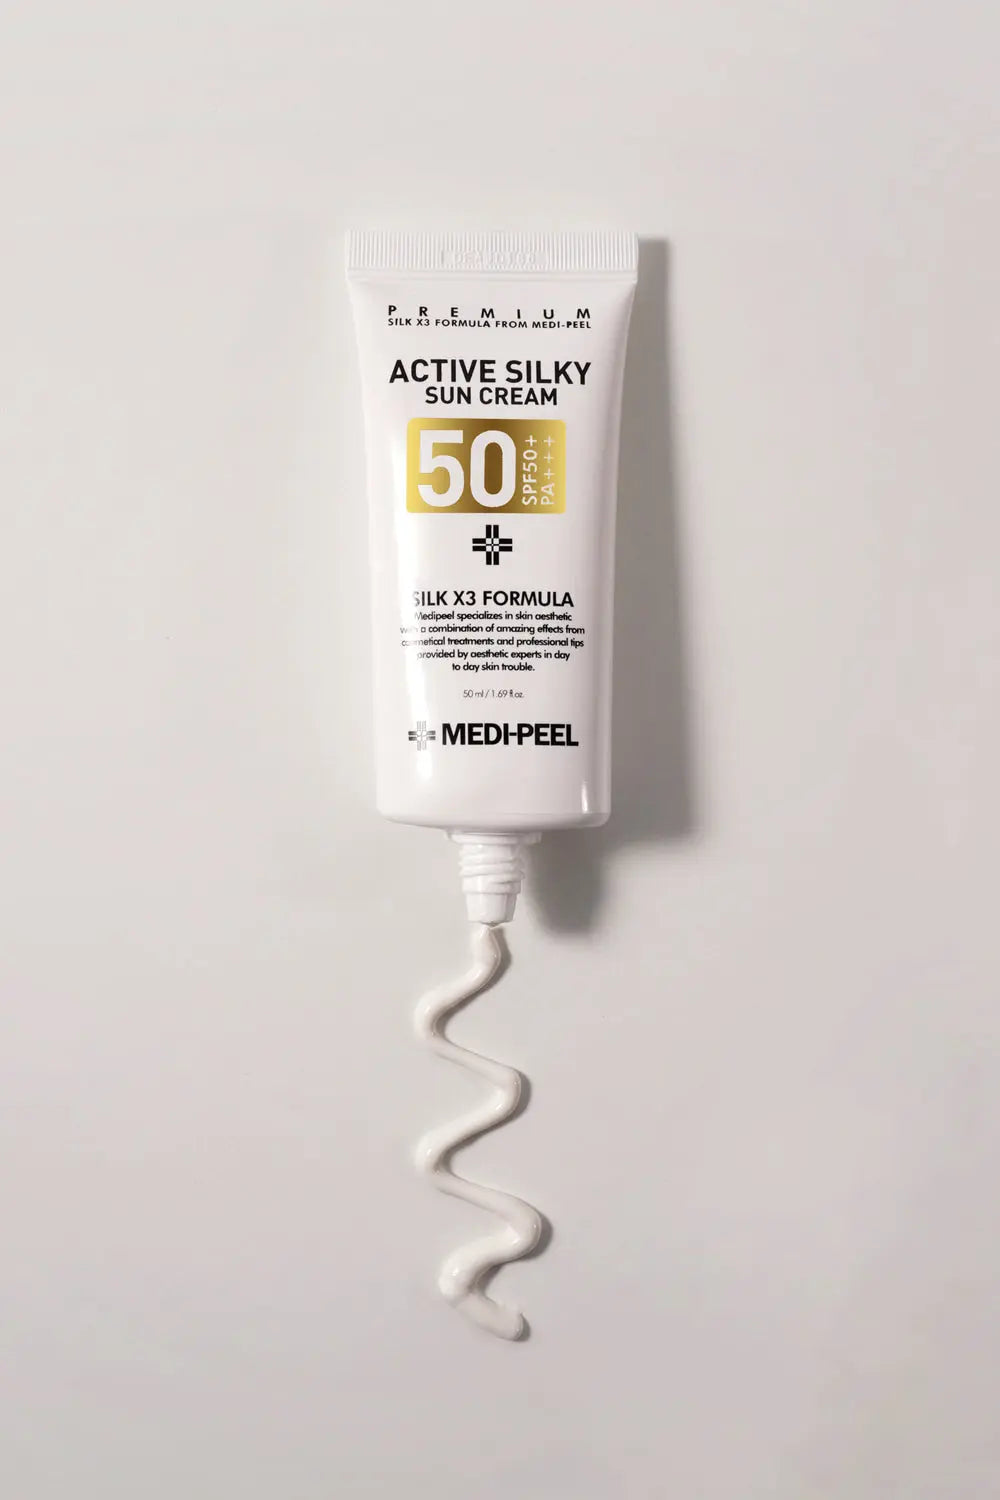 Active Silky Sun Cream - 50ml MEDI-PEEL